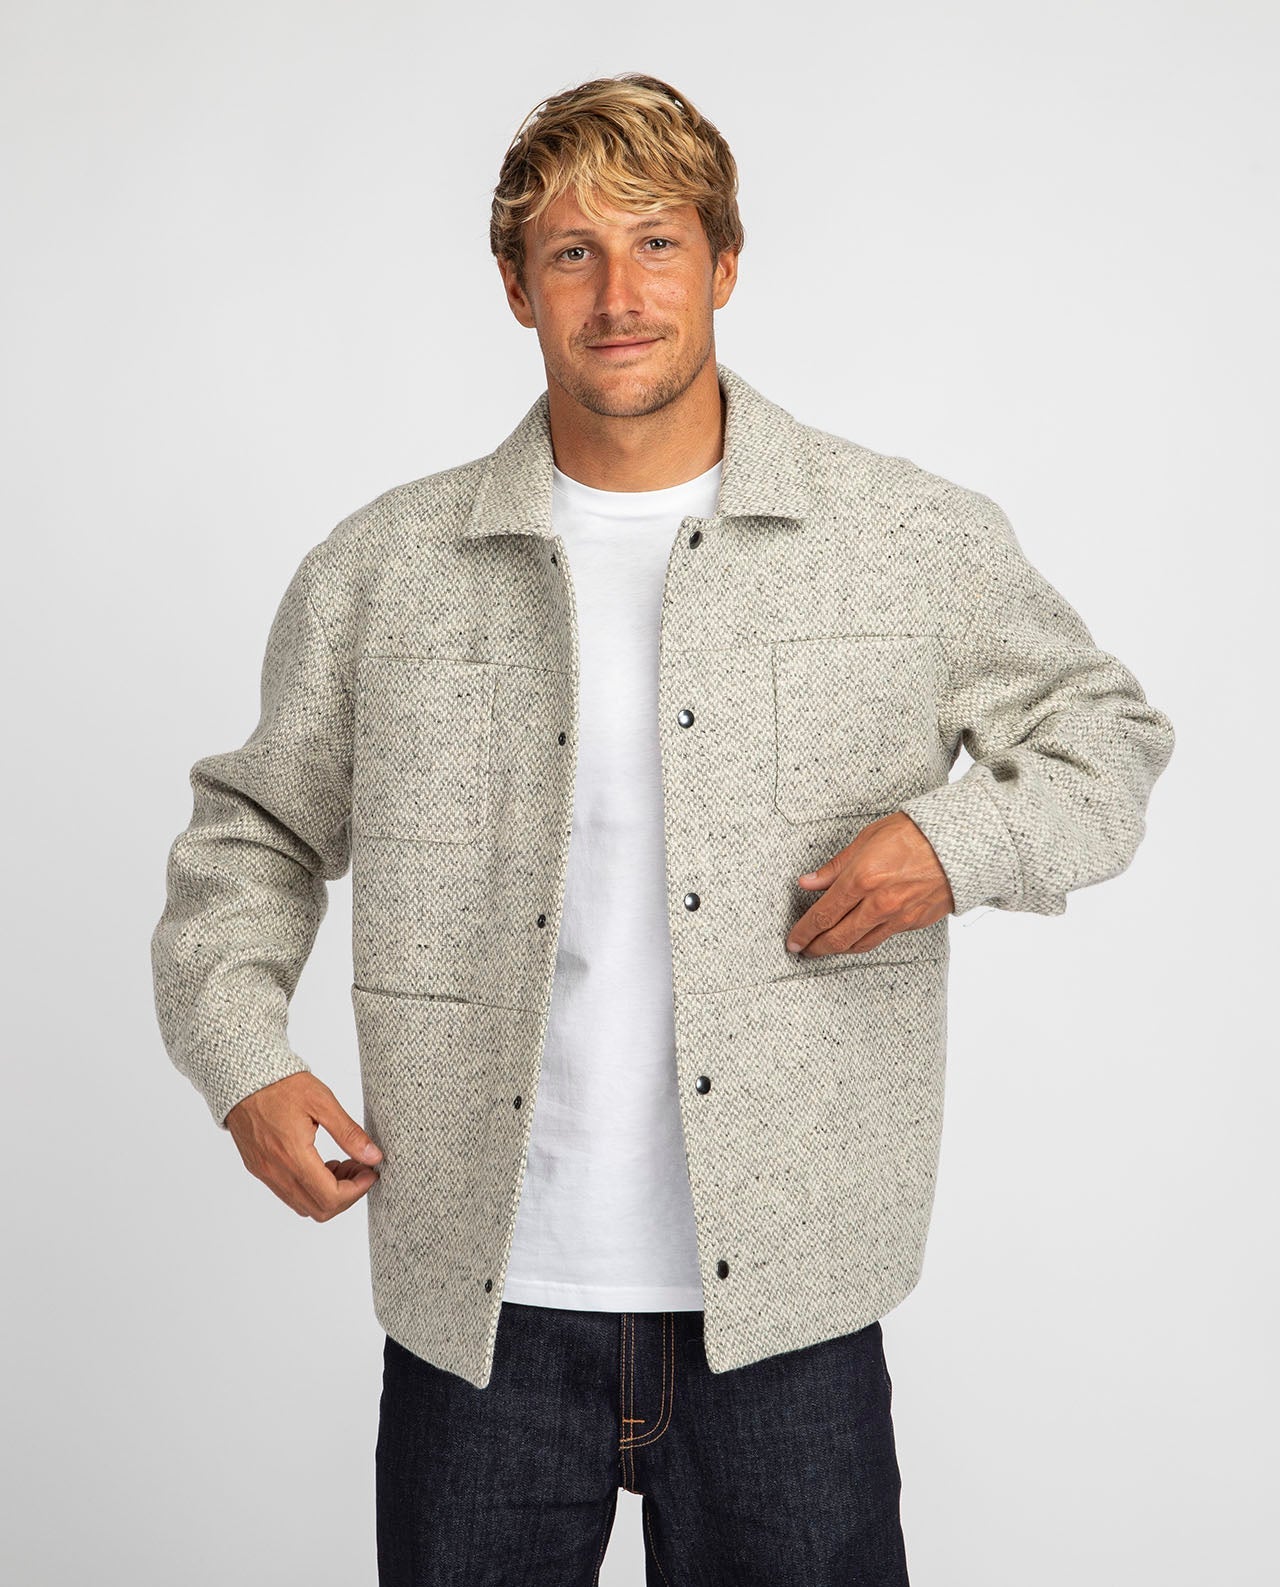 marché commun noyoco veste homme travail workwear laine recyclée éco-responsable éthique fabriquée en Europe gris